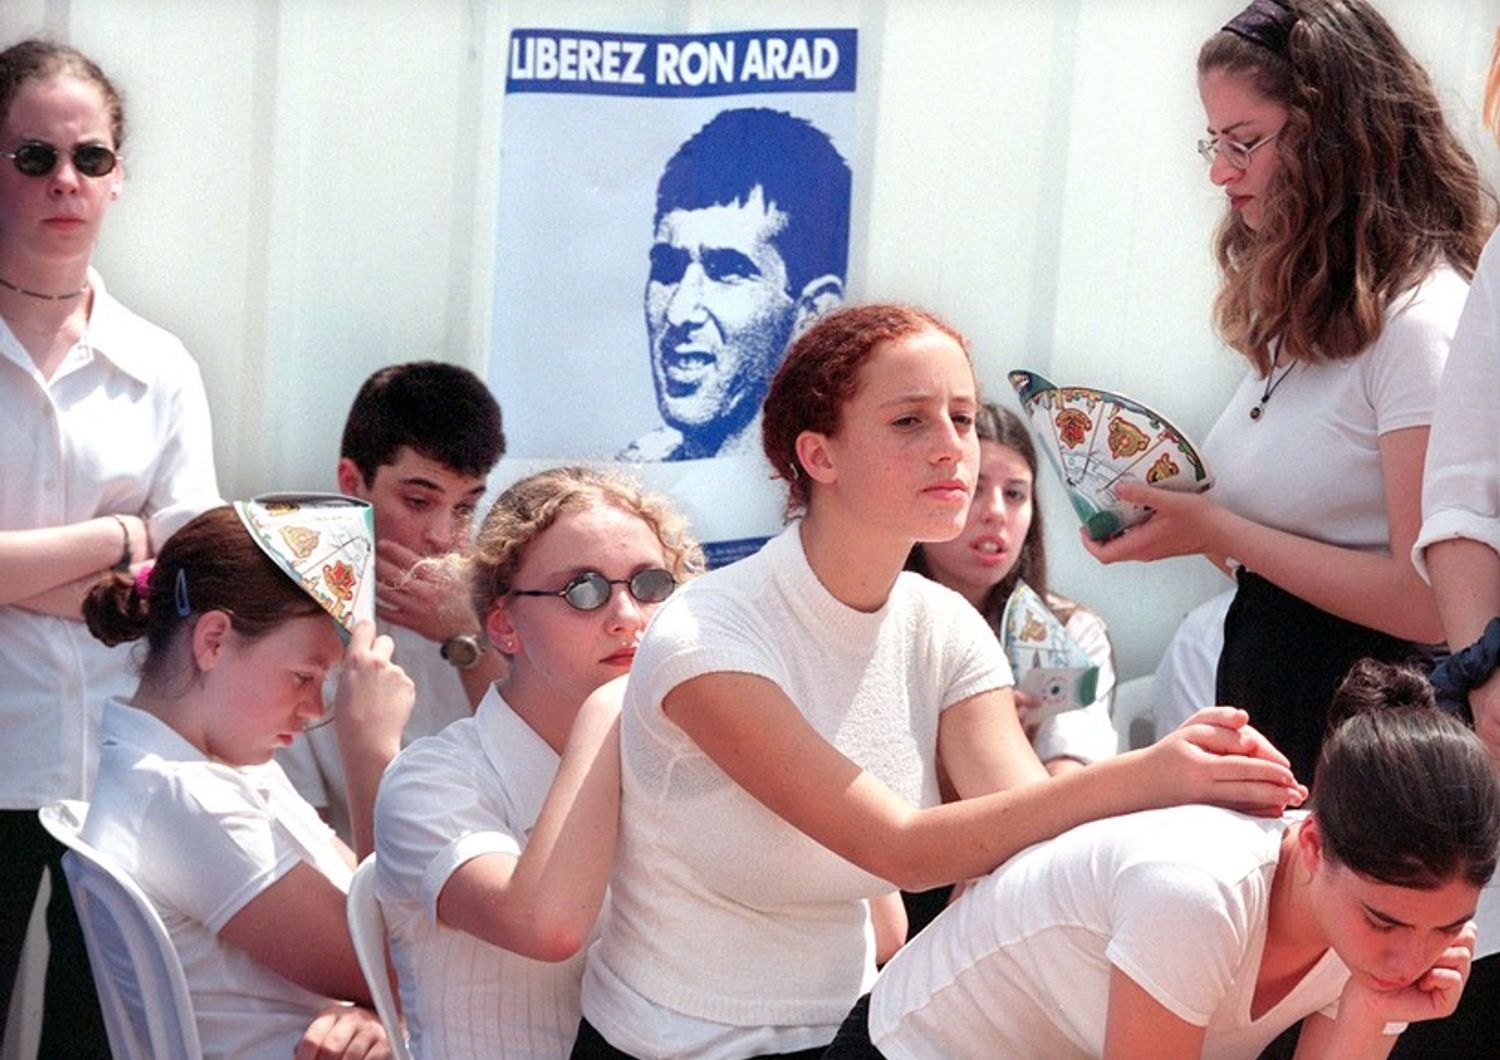 Una manifestazione organizzata in Israele per il 40esimo compleanno di Ron Arad, il navigatore abbattuto in Libano che si ritiene sia stato prigioniero degli iraniani